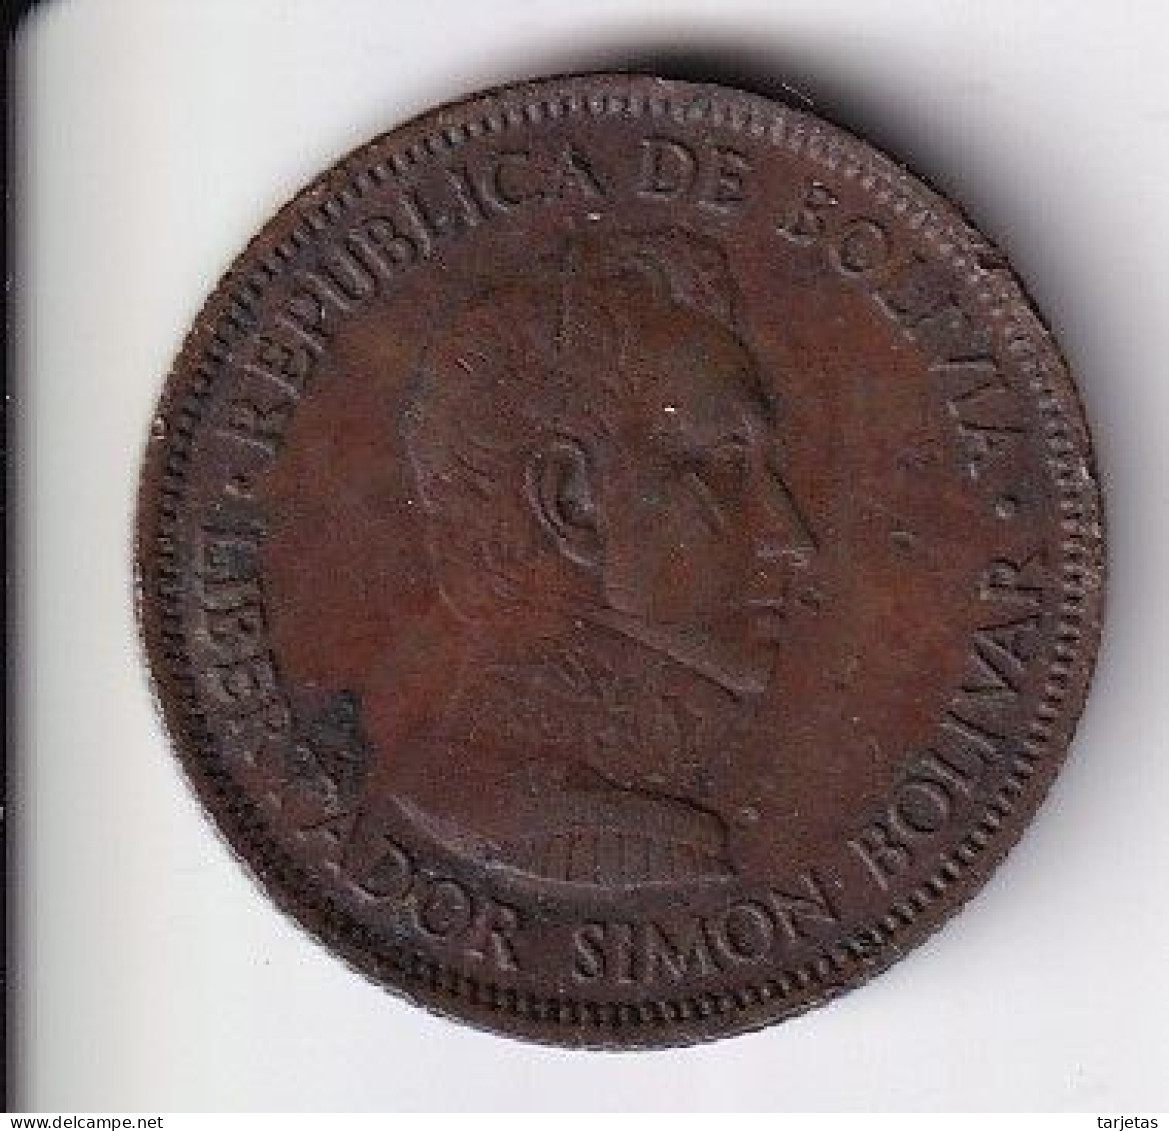 MONEDA DE VENEZUELA DE 10 BOLIVIANOS DEL AÑO 1951 (COIN) - Bolivie